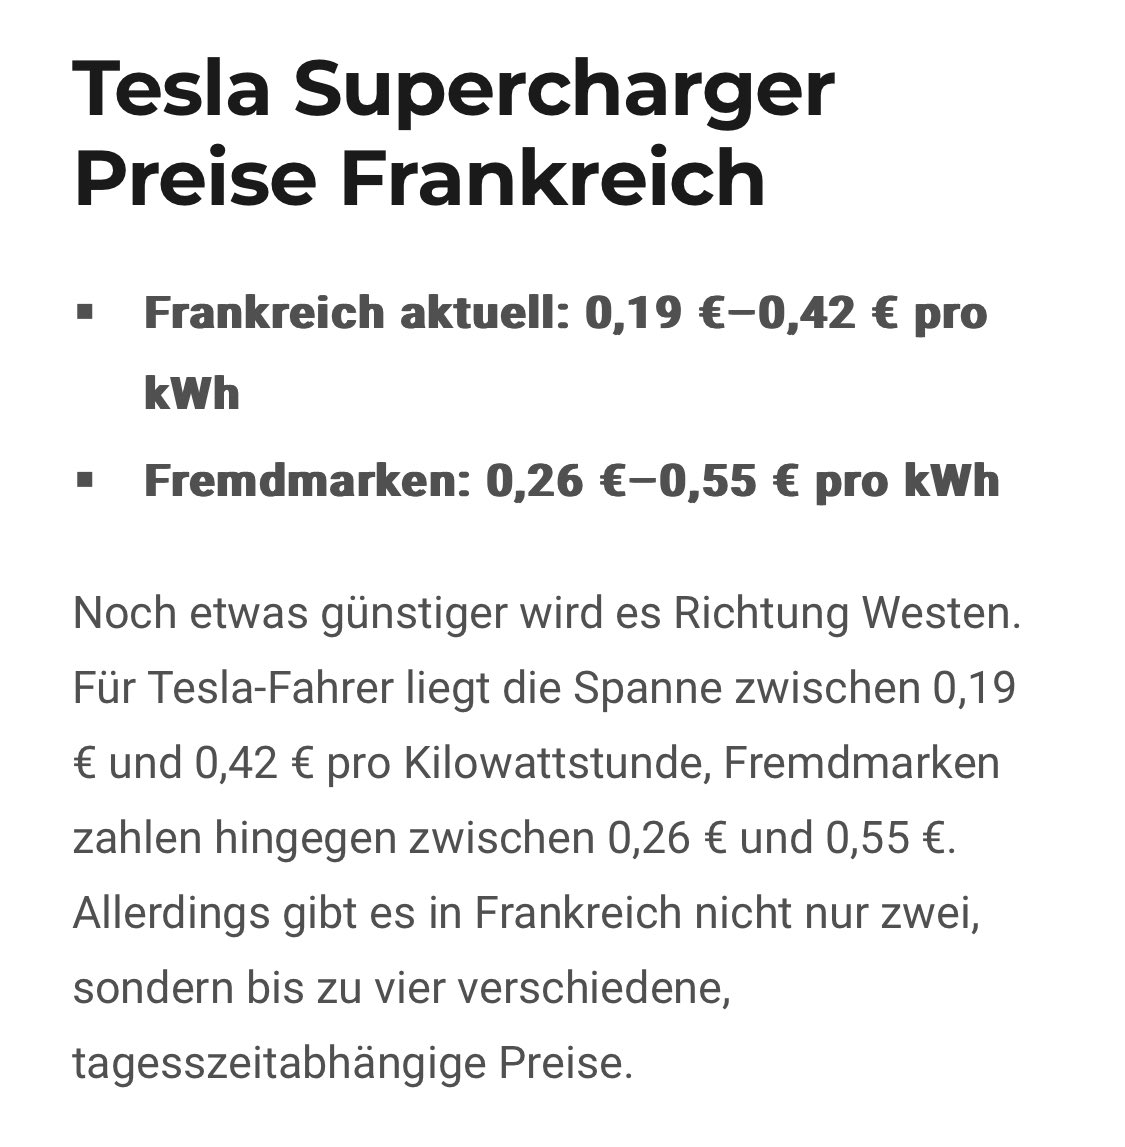 Tesla-Supercharger-Preise in Frankreich vs Deutschland 

Vorteile Atomkraftwerke vs deutsche Energiewende, die n-te 

Tesla-Fahrer zahlen in Frankreich oft 30% weniger, teilweise sogar nur die Hälfte der deutschen Preise

#atomkraftjabitte 

Quelle: Teslalabs